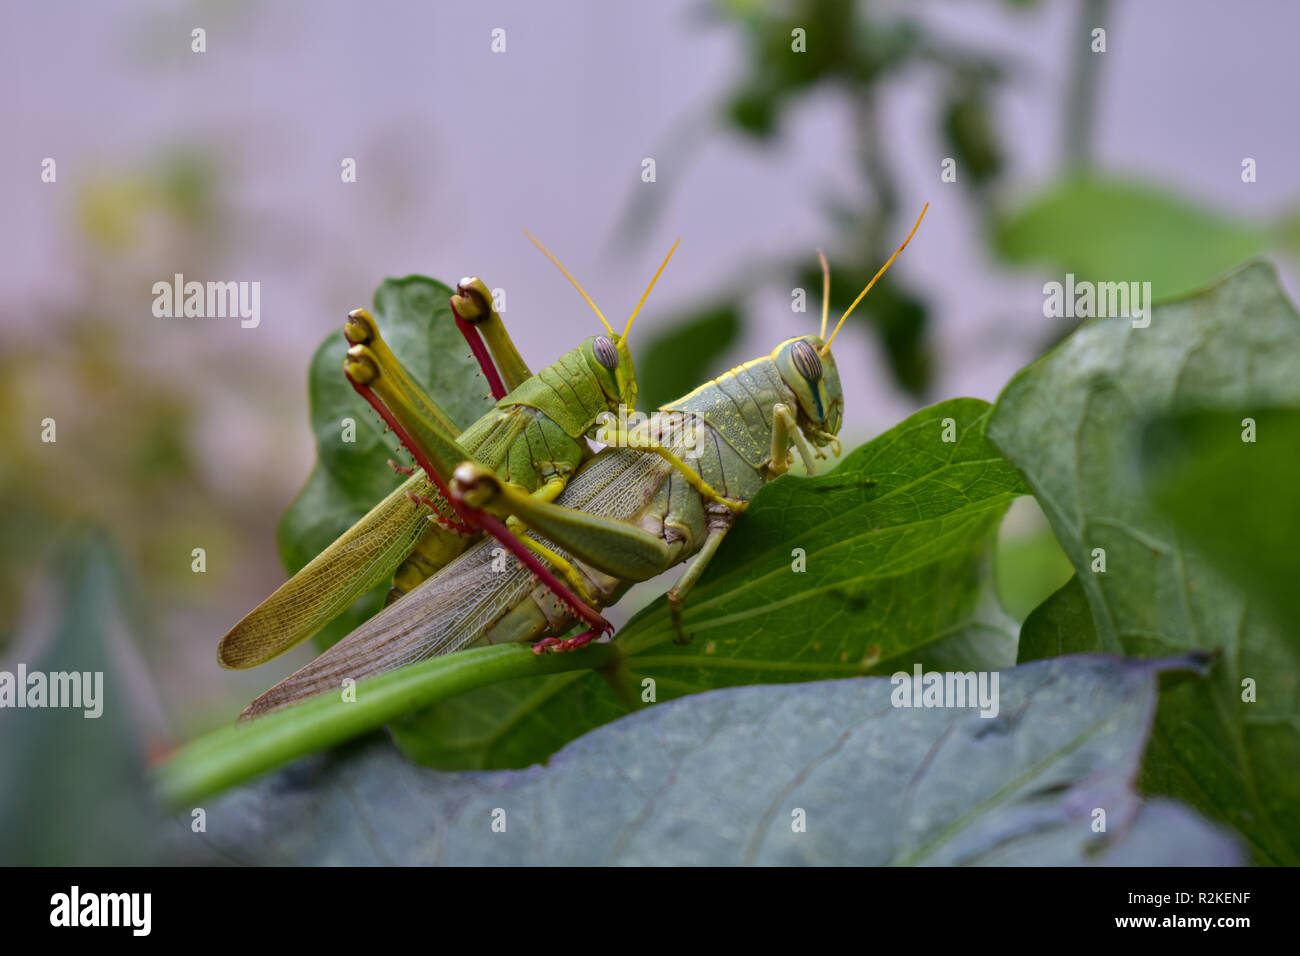 Cavallette verde immagini e fotografie stock ad alta risoluzione - Alamy